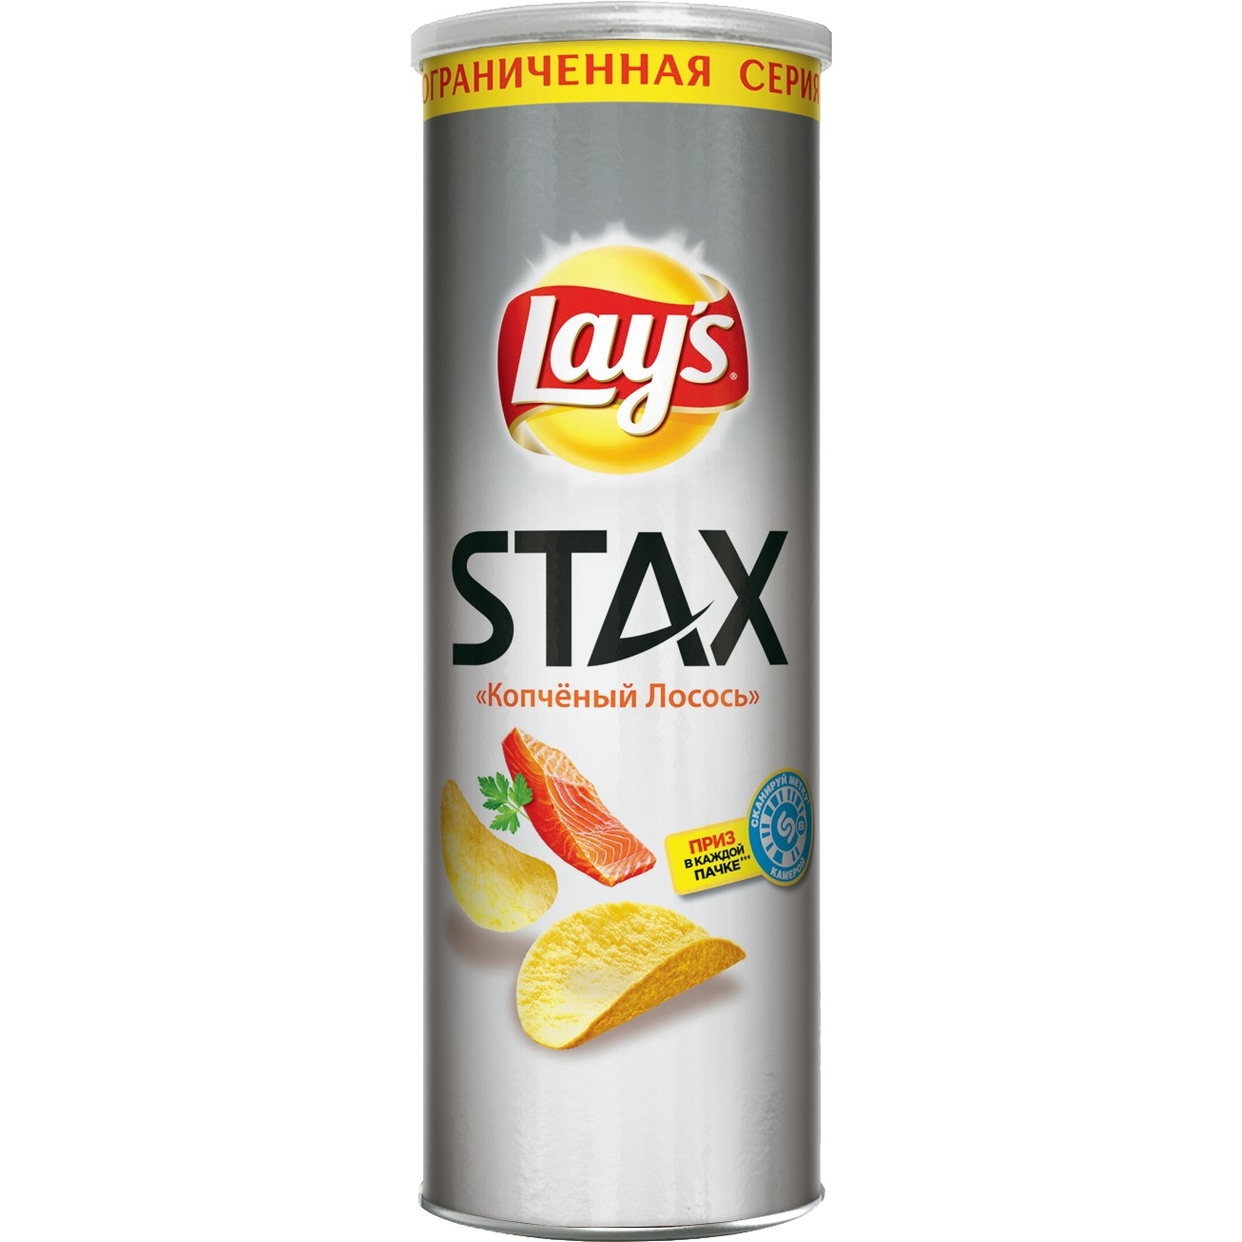 Картофельные чипсы Lay's Stax со вкусом "Копченый лосось", 165гр по акции в Пятерочке